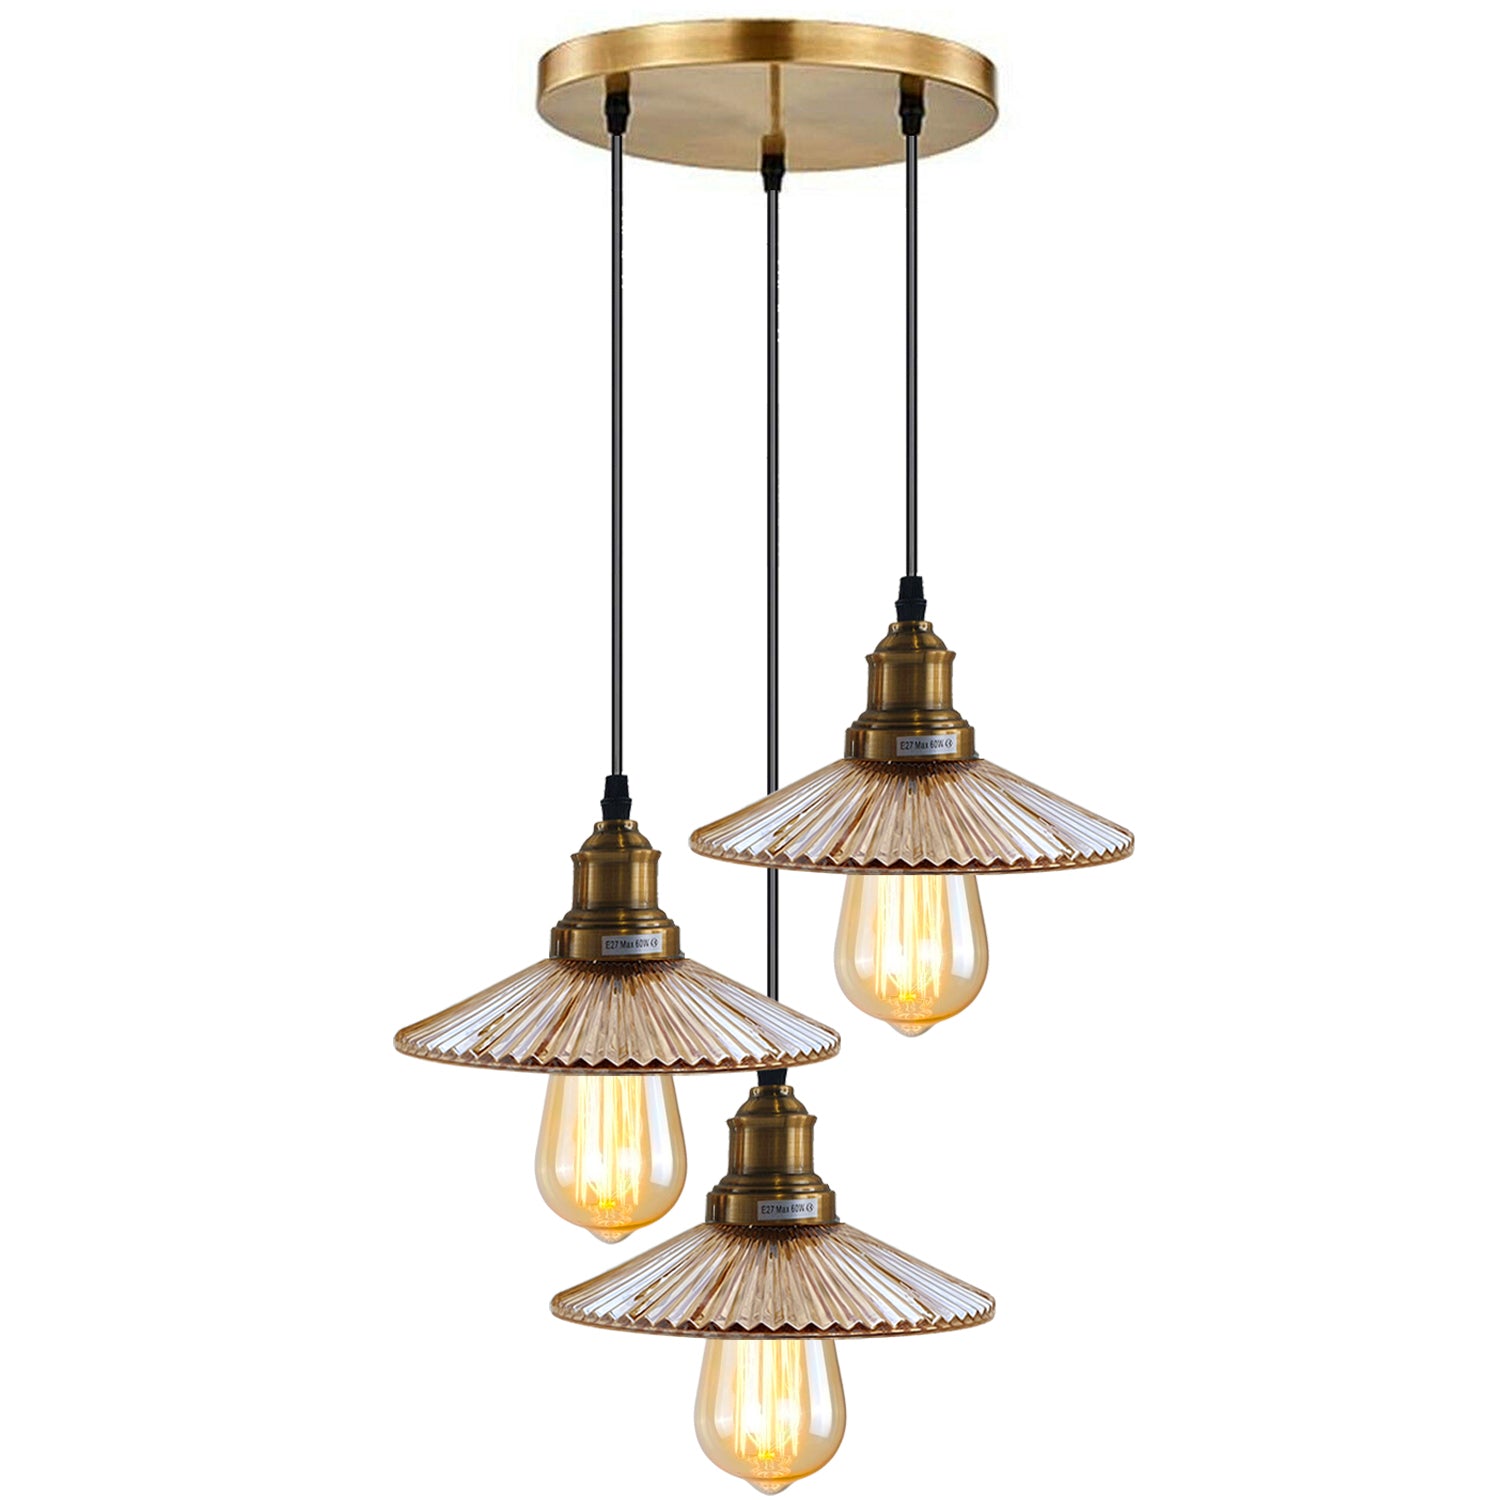 3 Way Ceiling Pendant Light Cluster Light Fitting Glass Lampshade Yellow Brass Finish Home E27 Lighting Kit~1559 - LEDSone UK Ltd